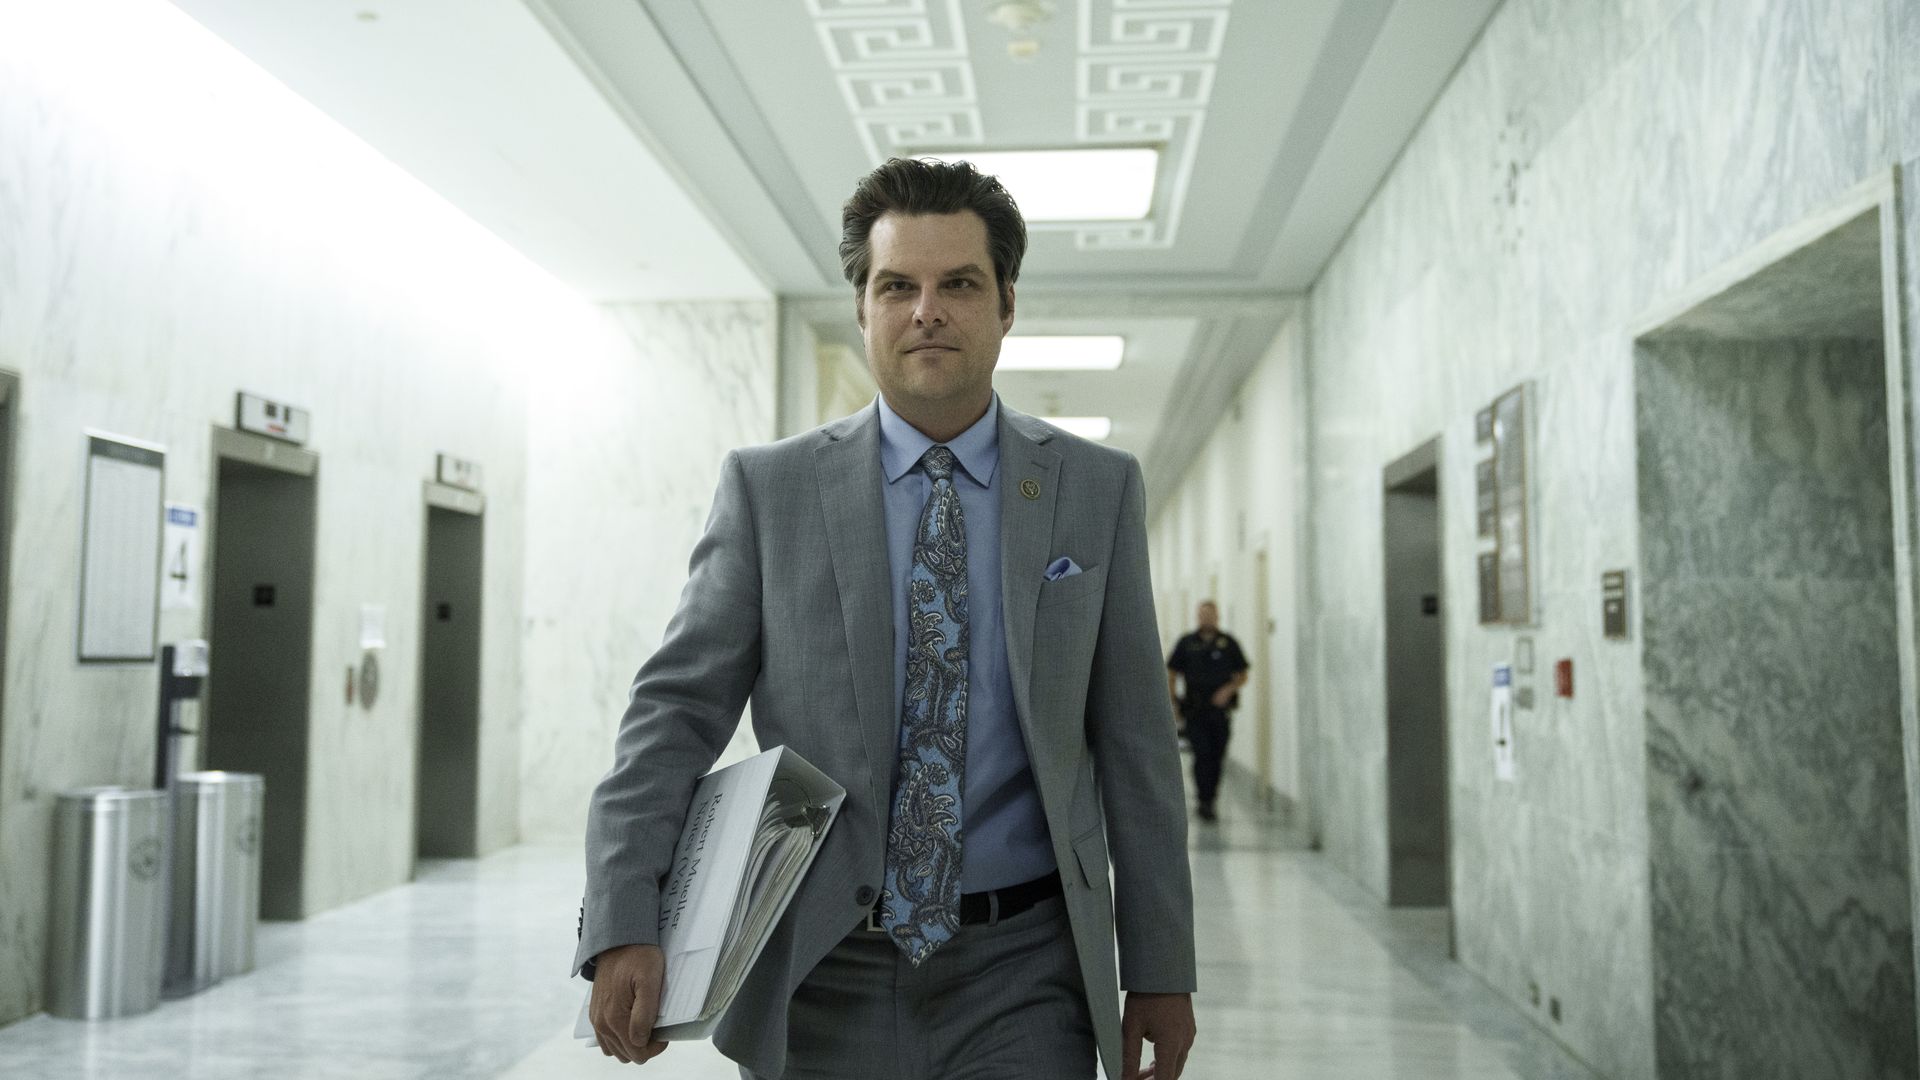 Rep. Matt Gaetz is seen walking down a hall in Congress.